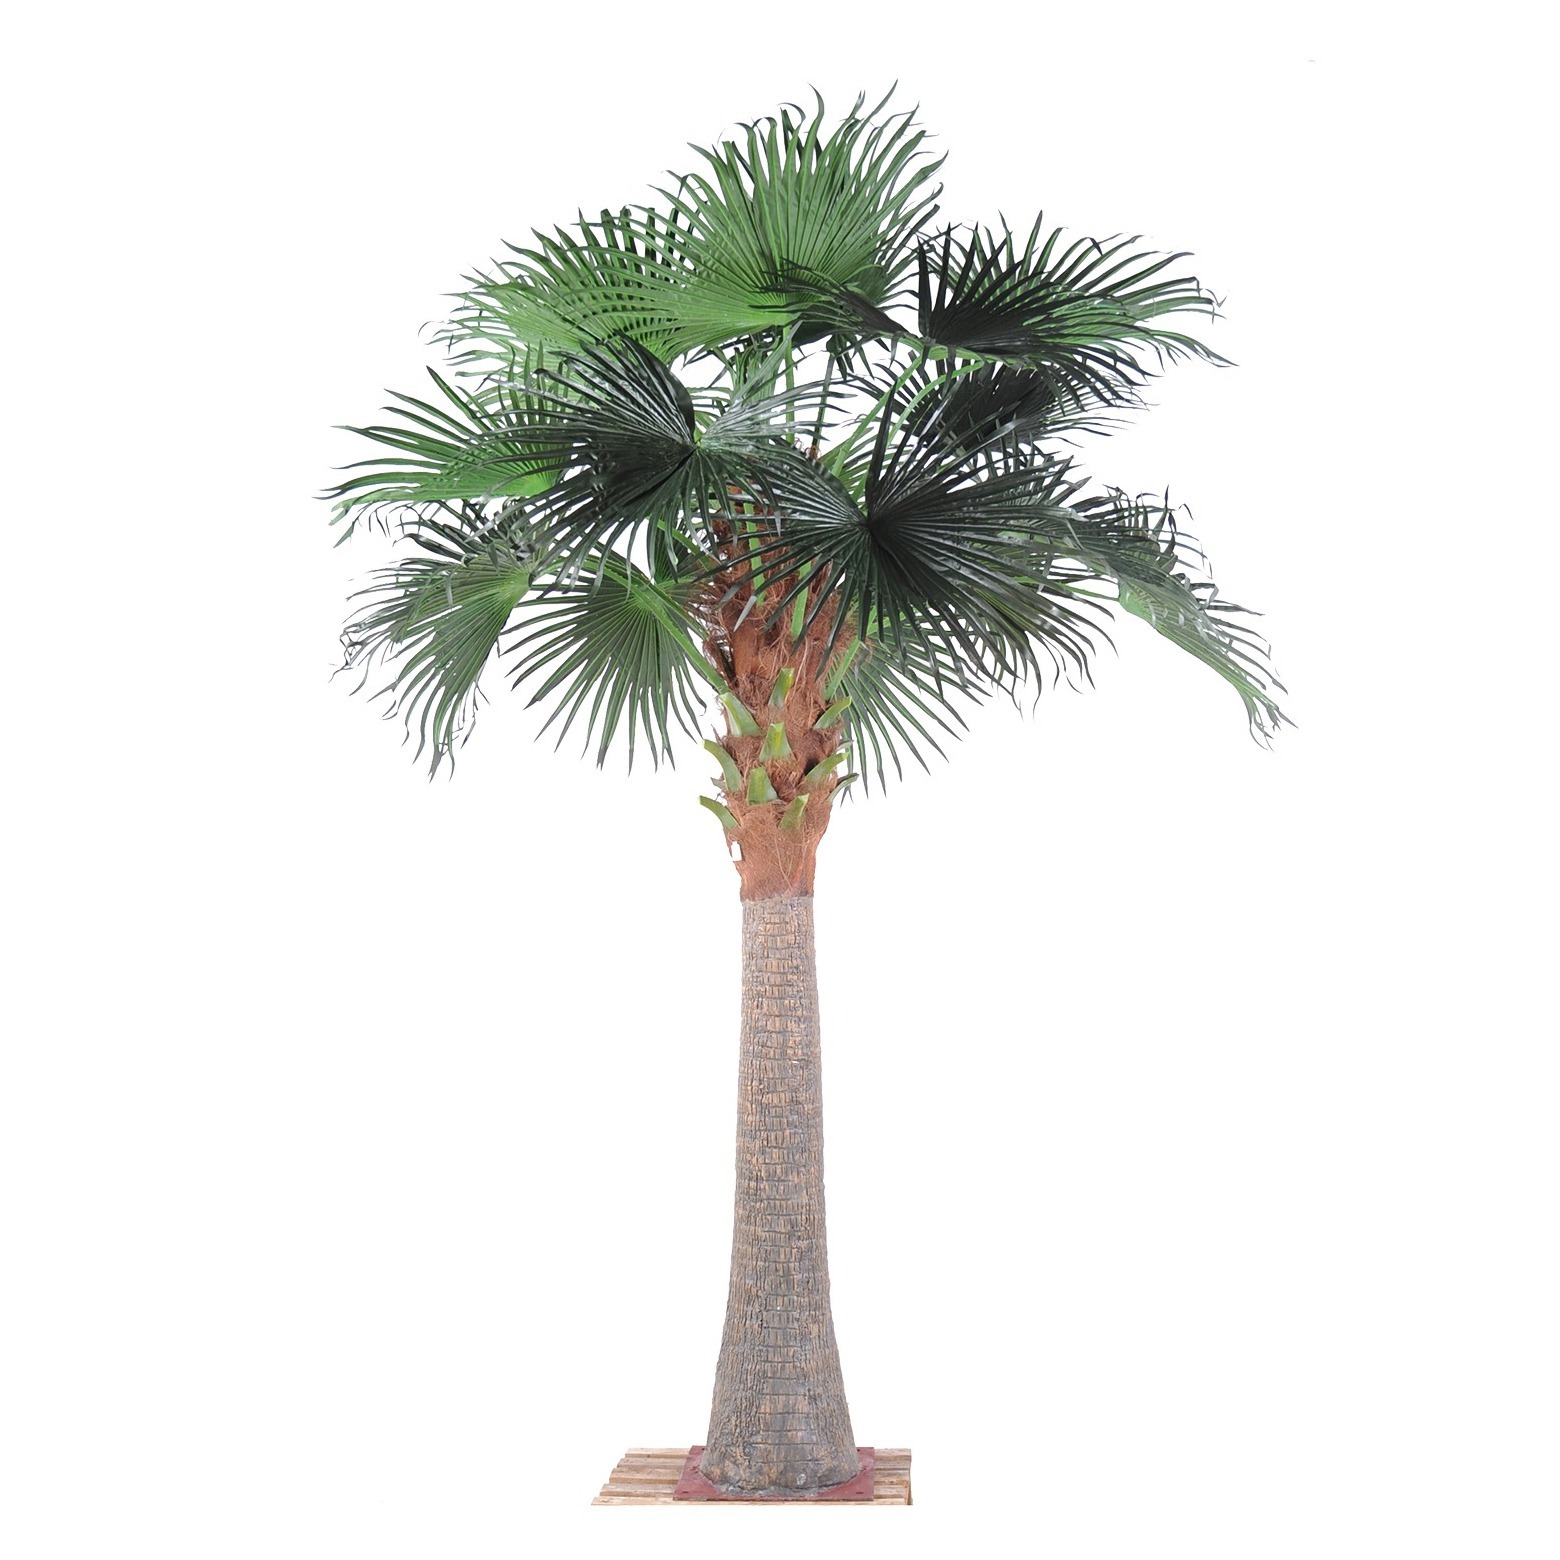 Palmier artificiel chusan géant